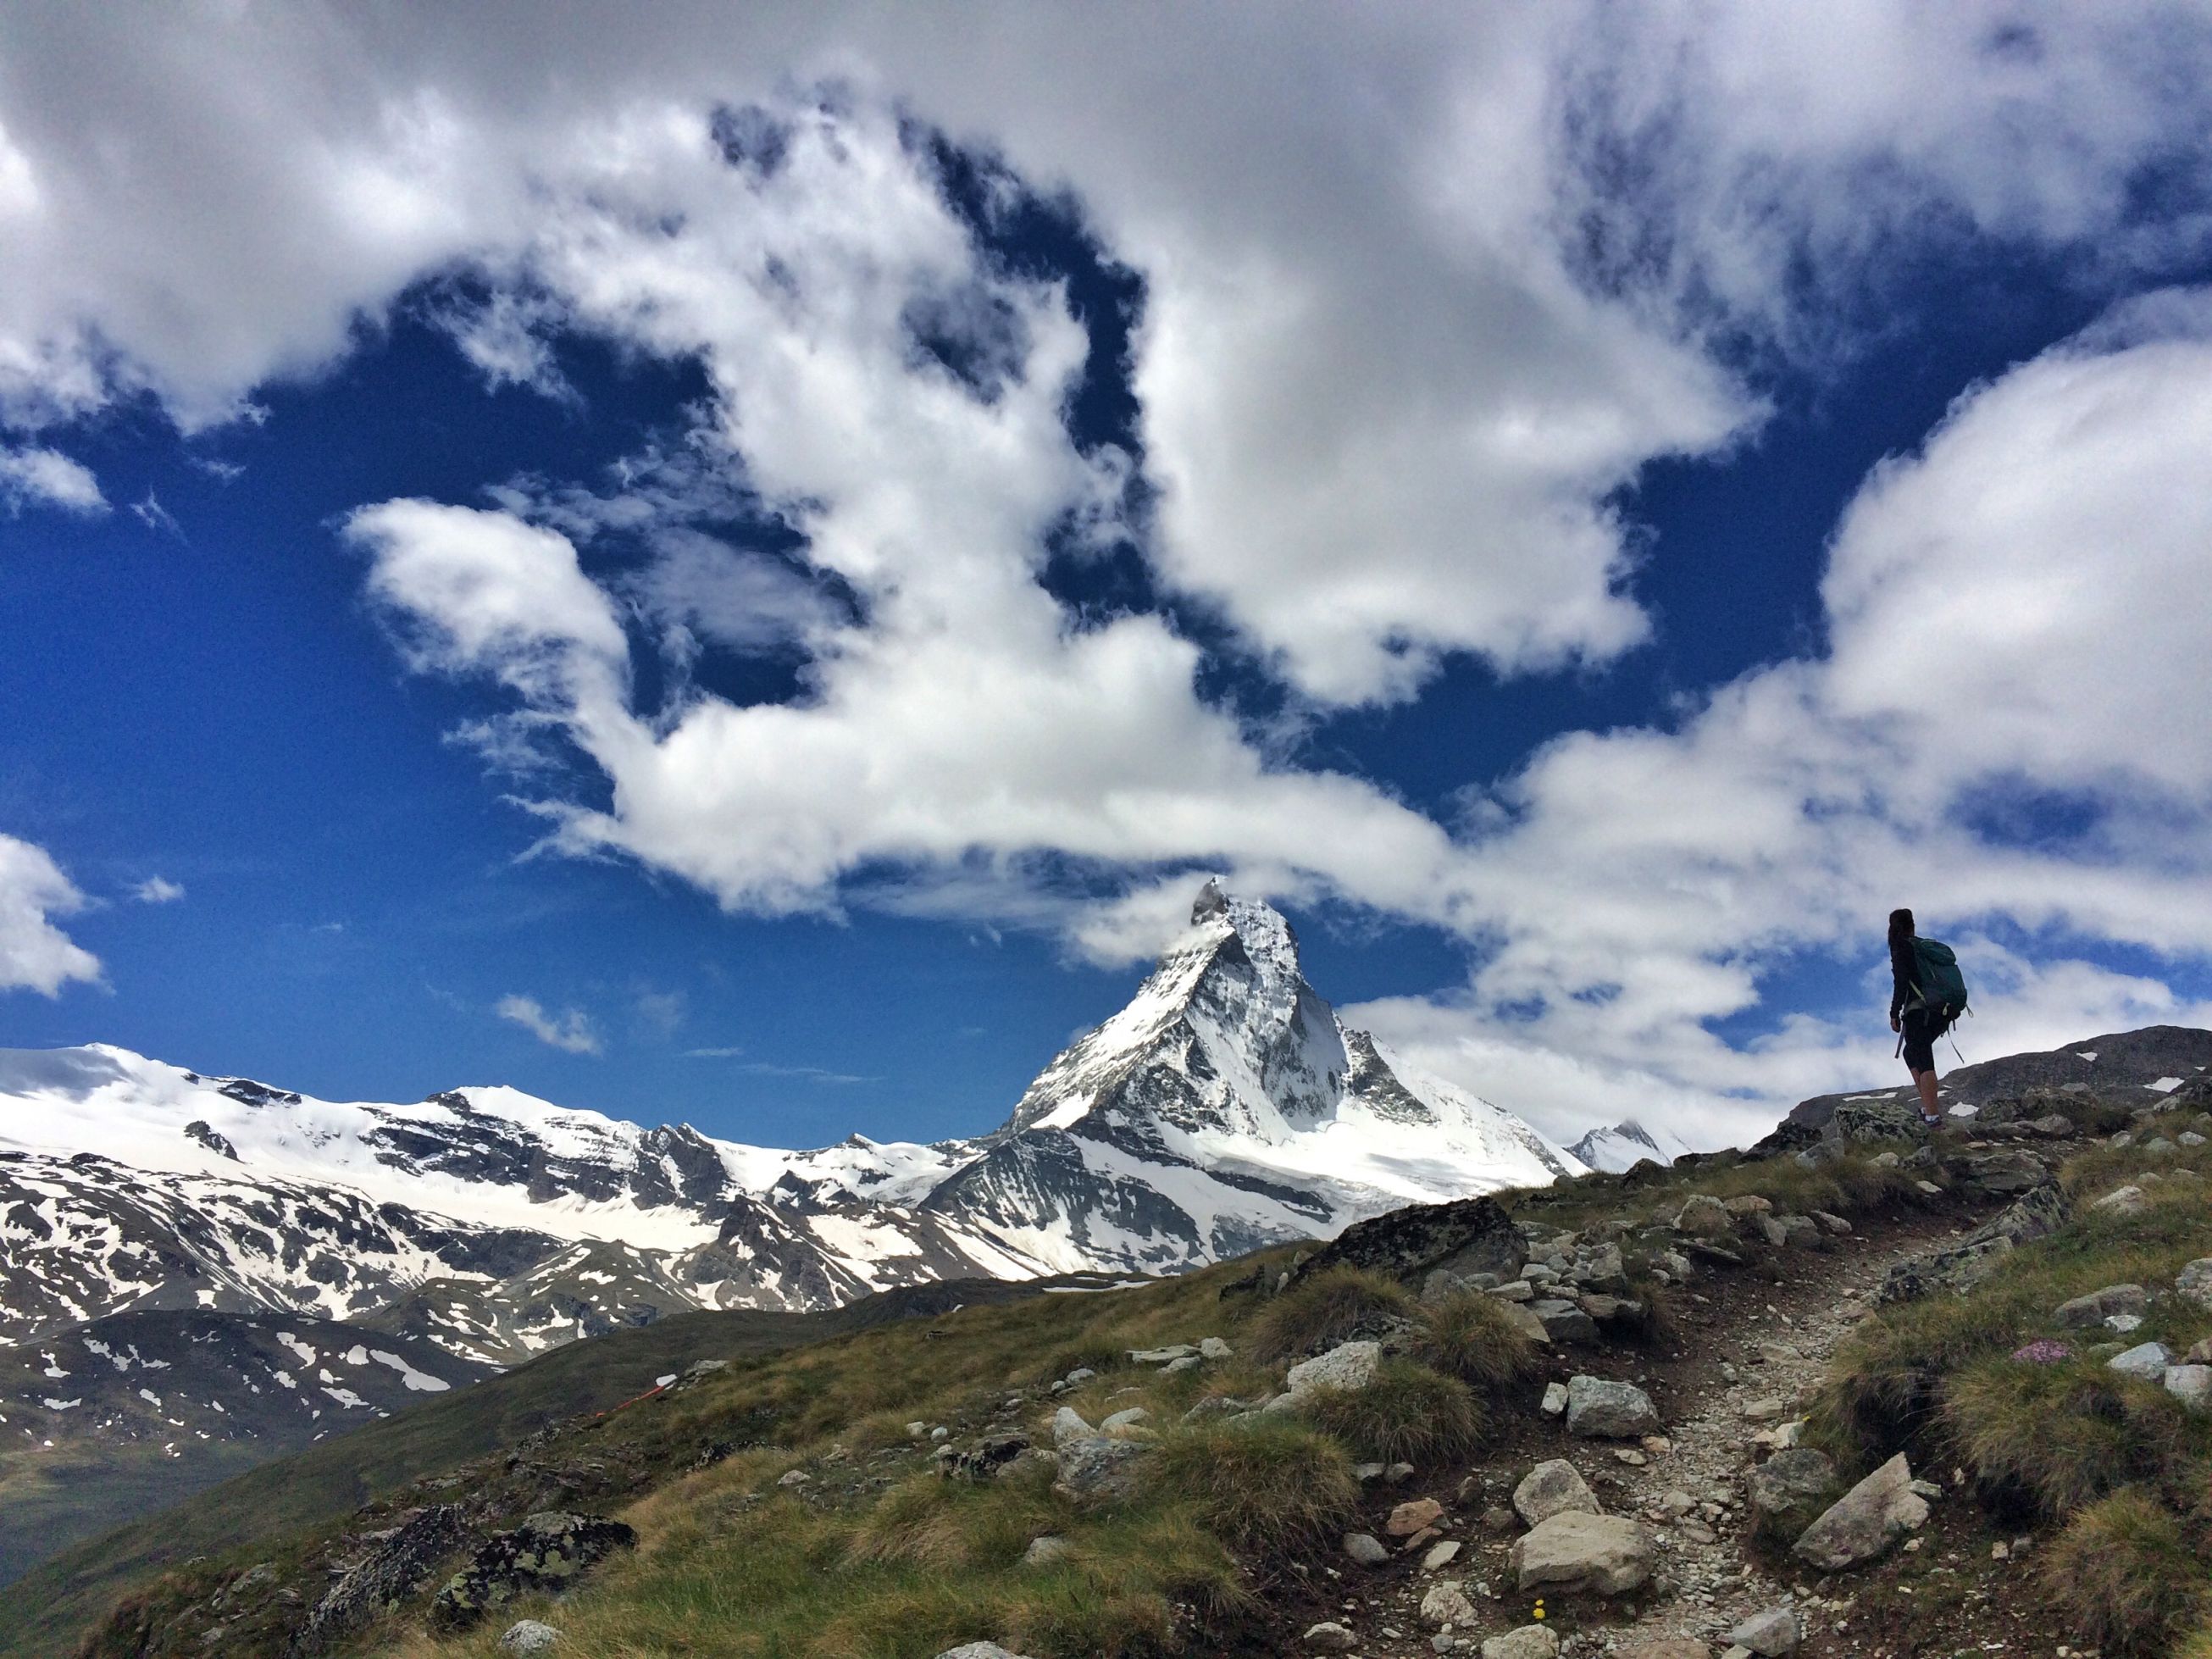 zermatt guided hiking tours